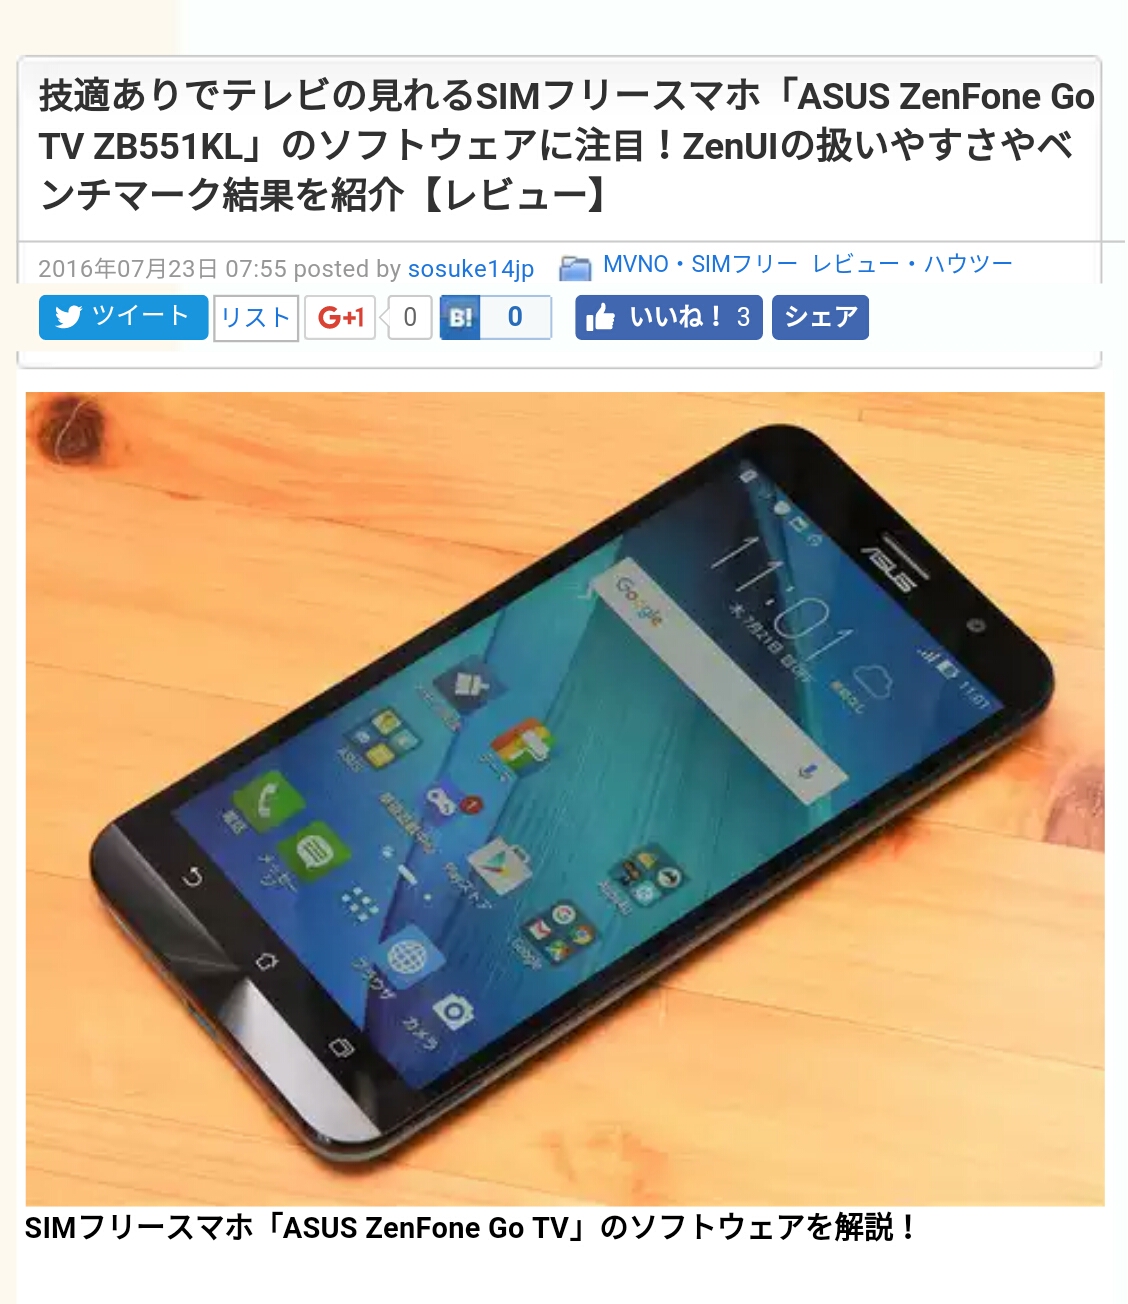 ASUS ZenFone Go TVのソフトウェアを紹介